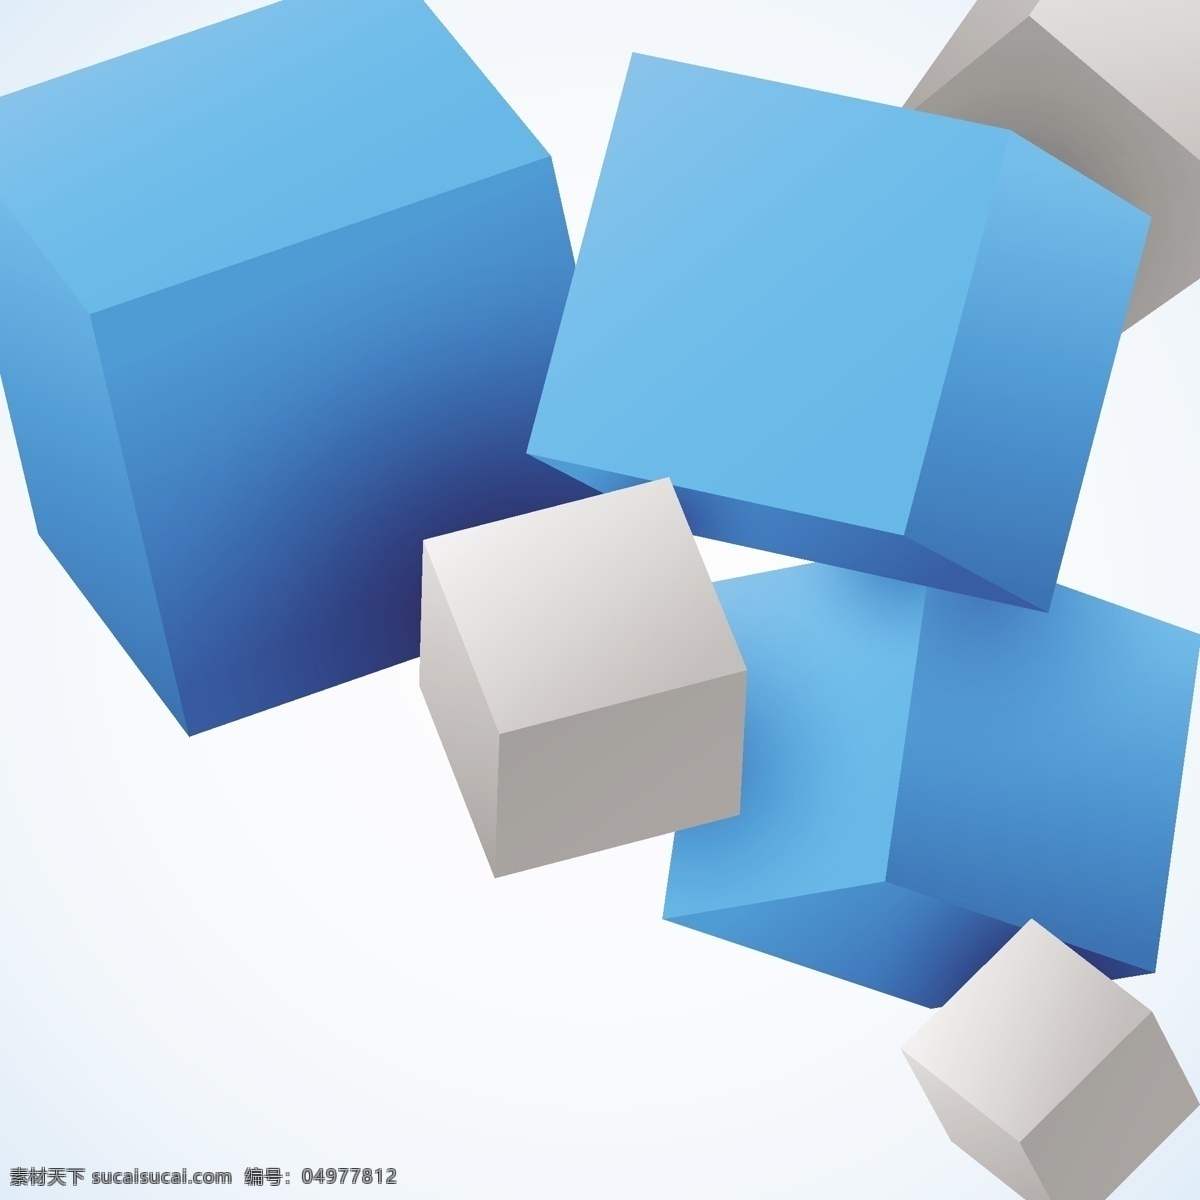 3d方块 3d 方块 模板下载 几何图案 立体图案 3d图案 生活百科 矢量素材 白色